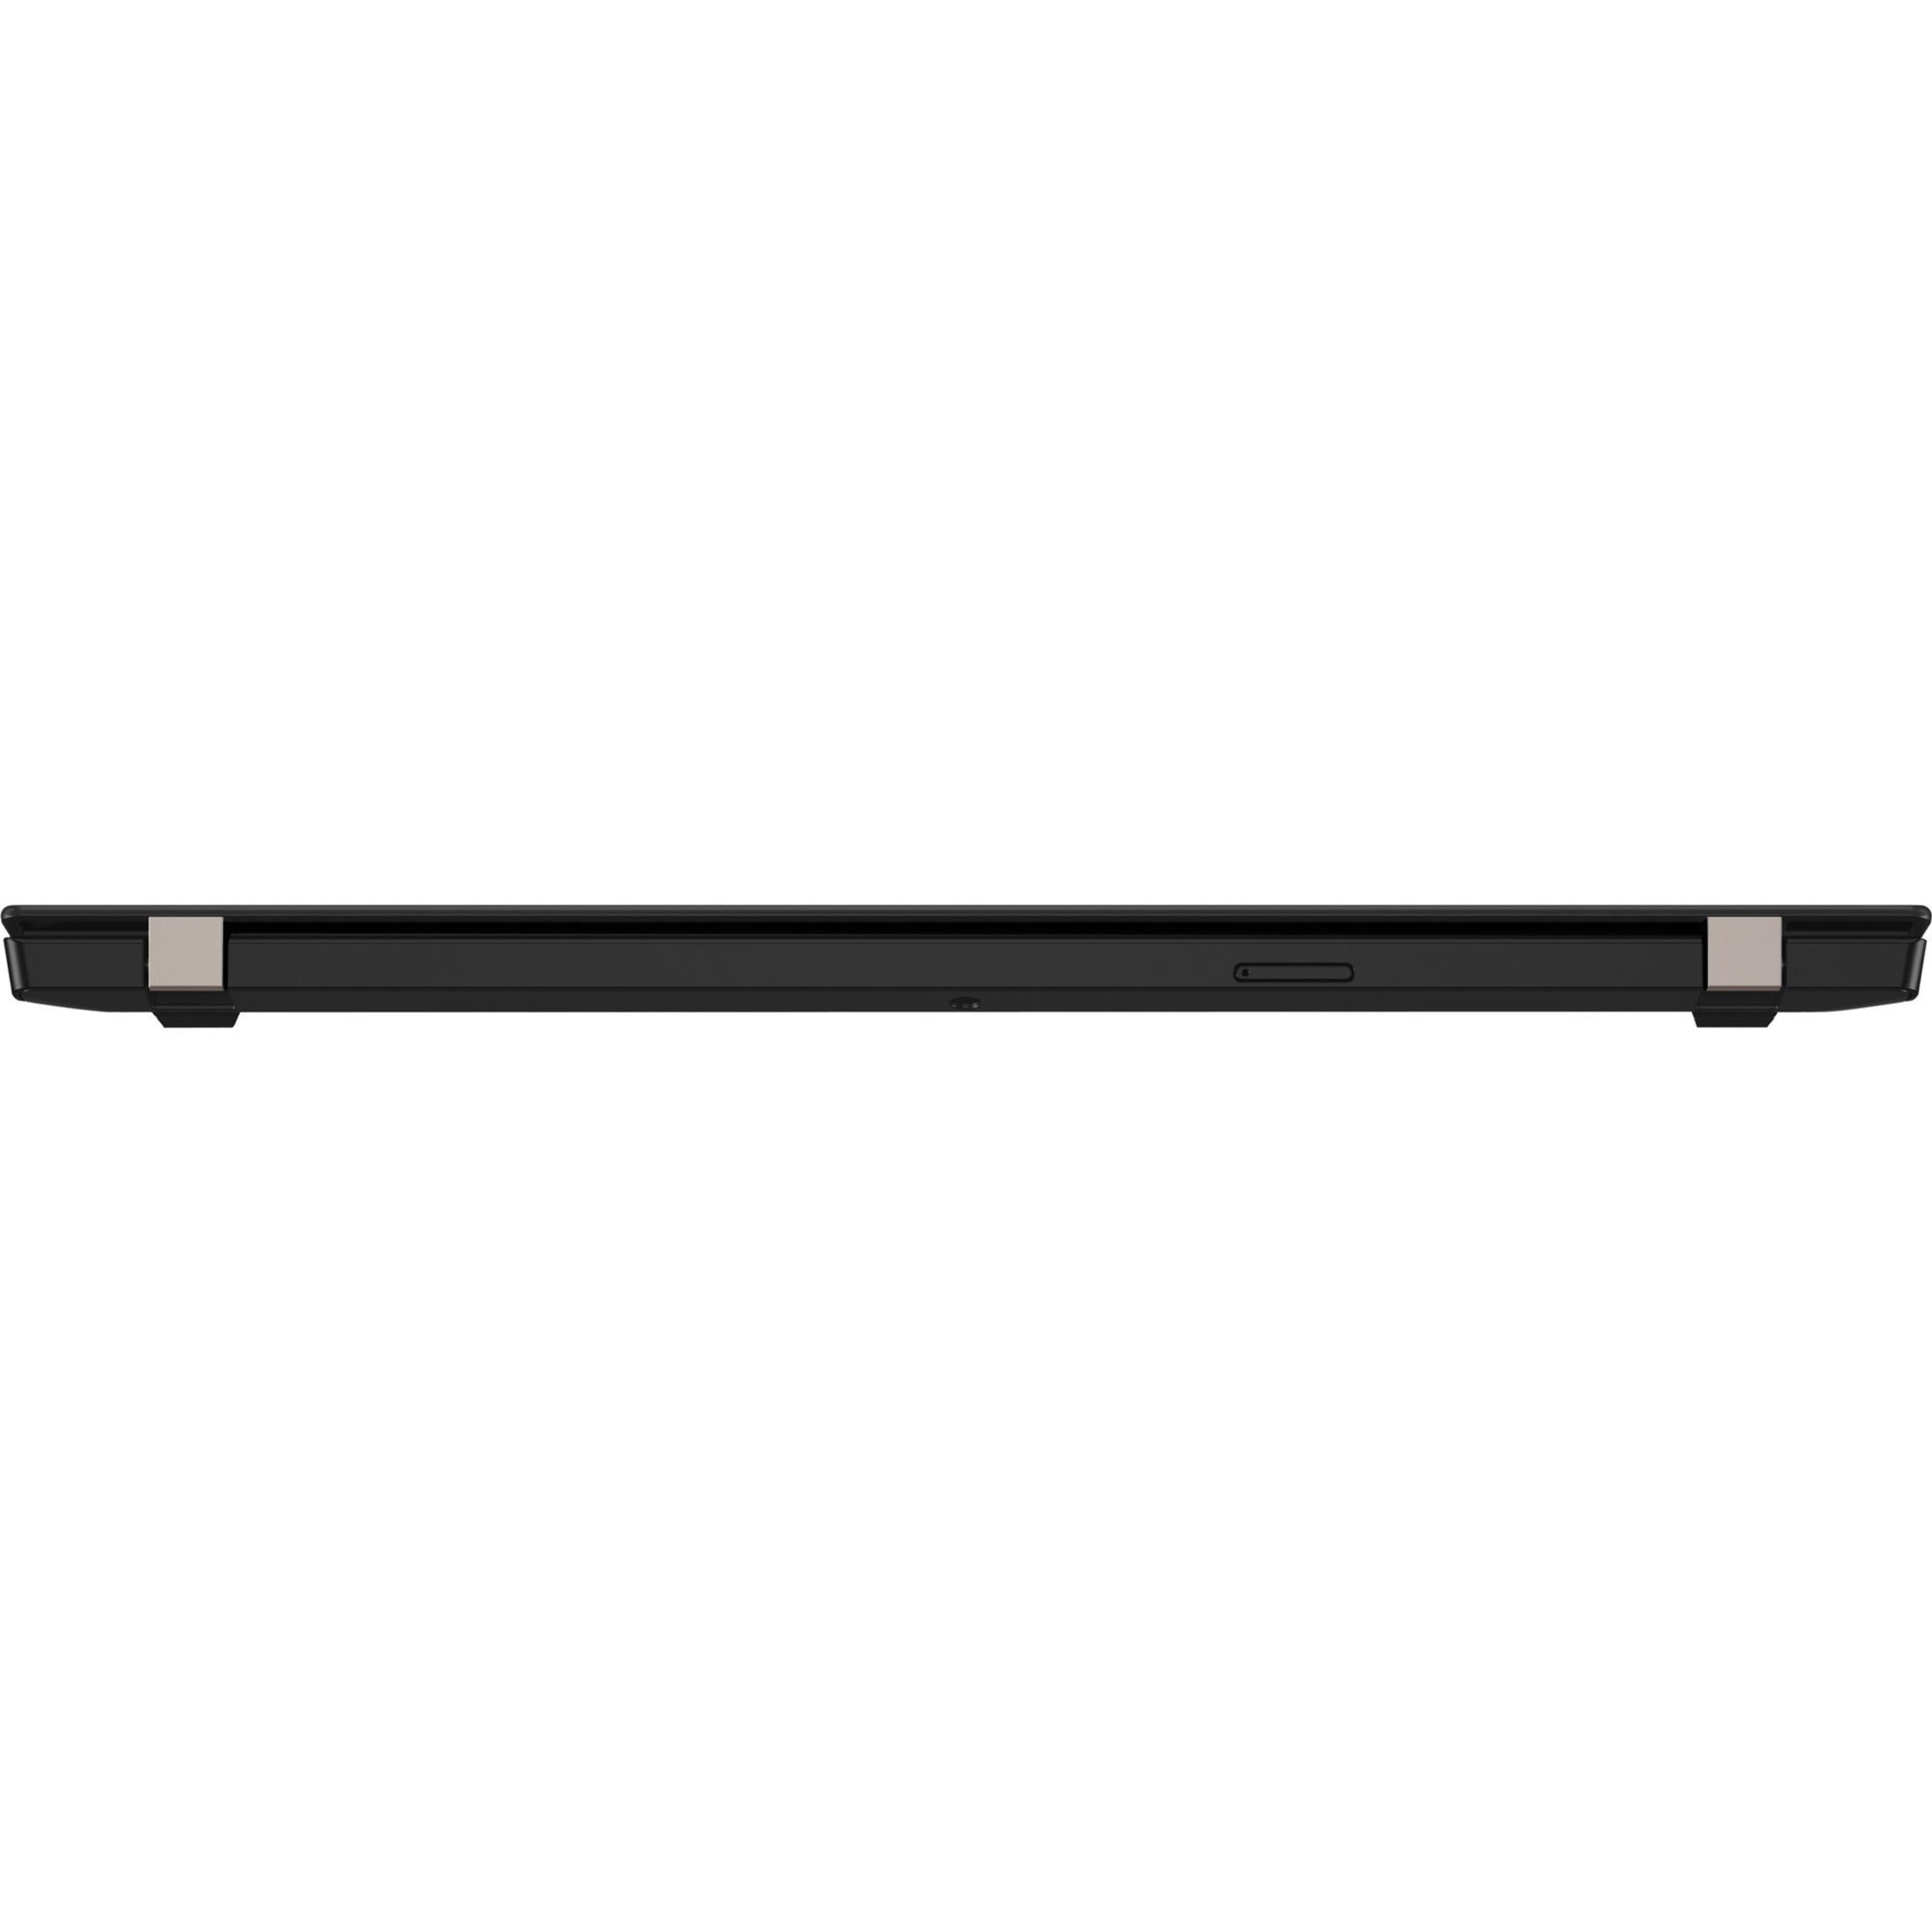 Lenovo ThinkPad X13 Gen 1 13.3" Notebook i5-10310U 16GB DDR4 512GB SSD Win10 Pro  - Grade A